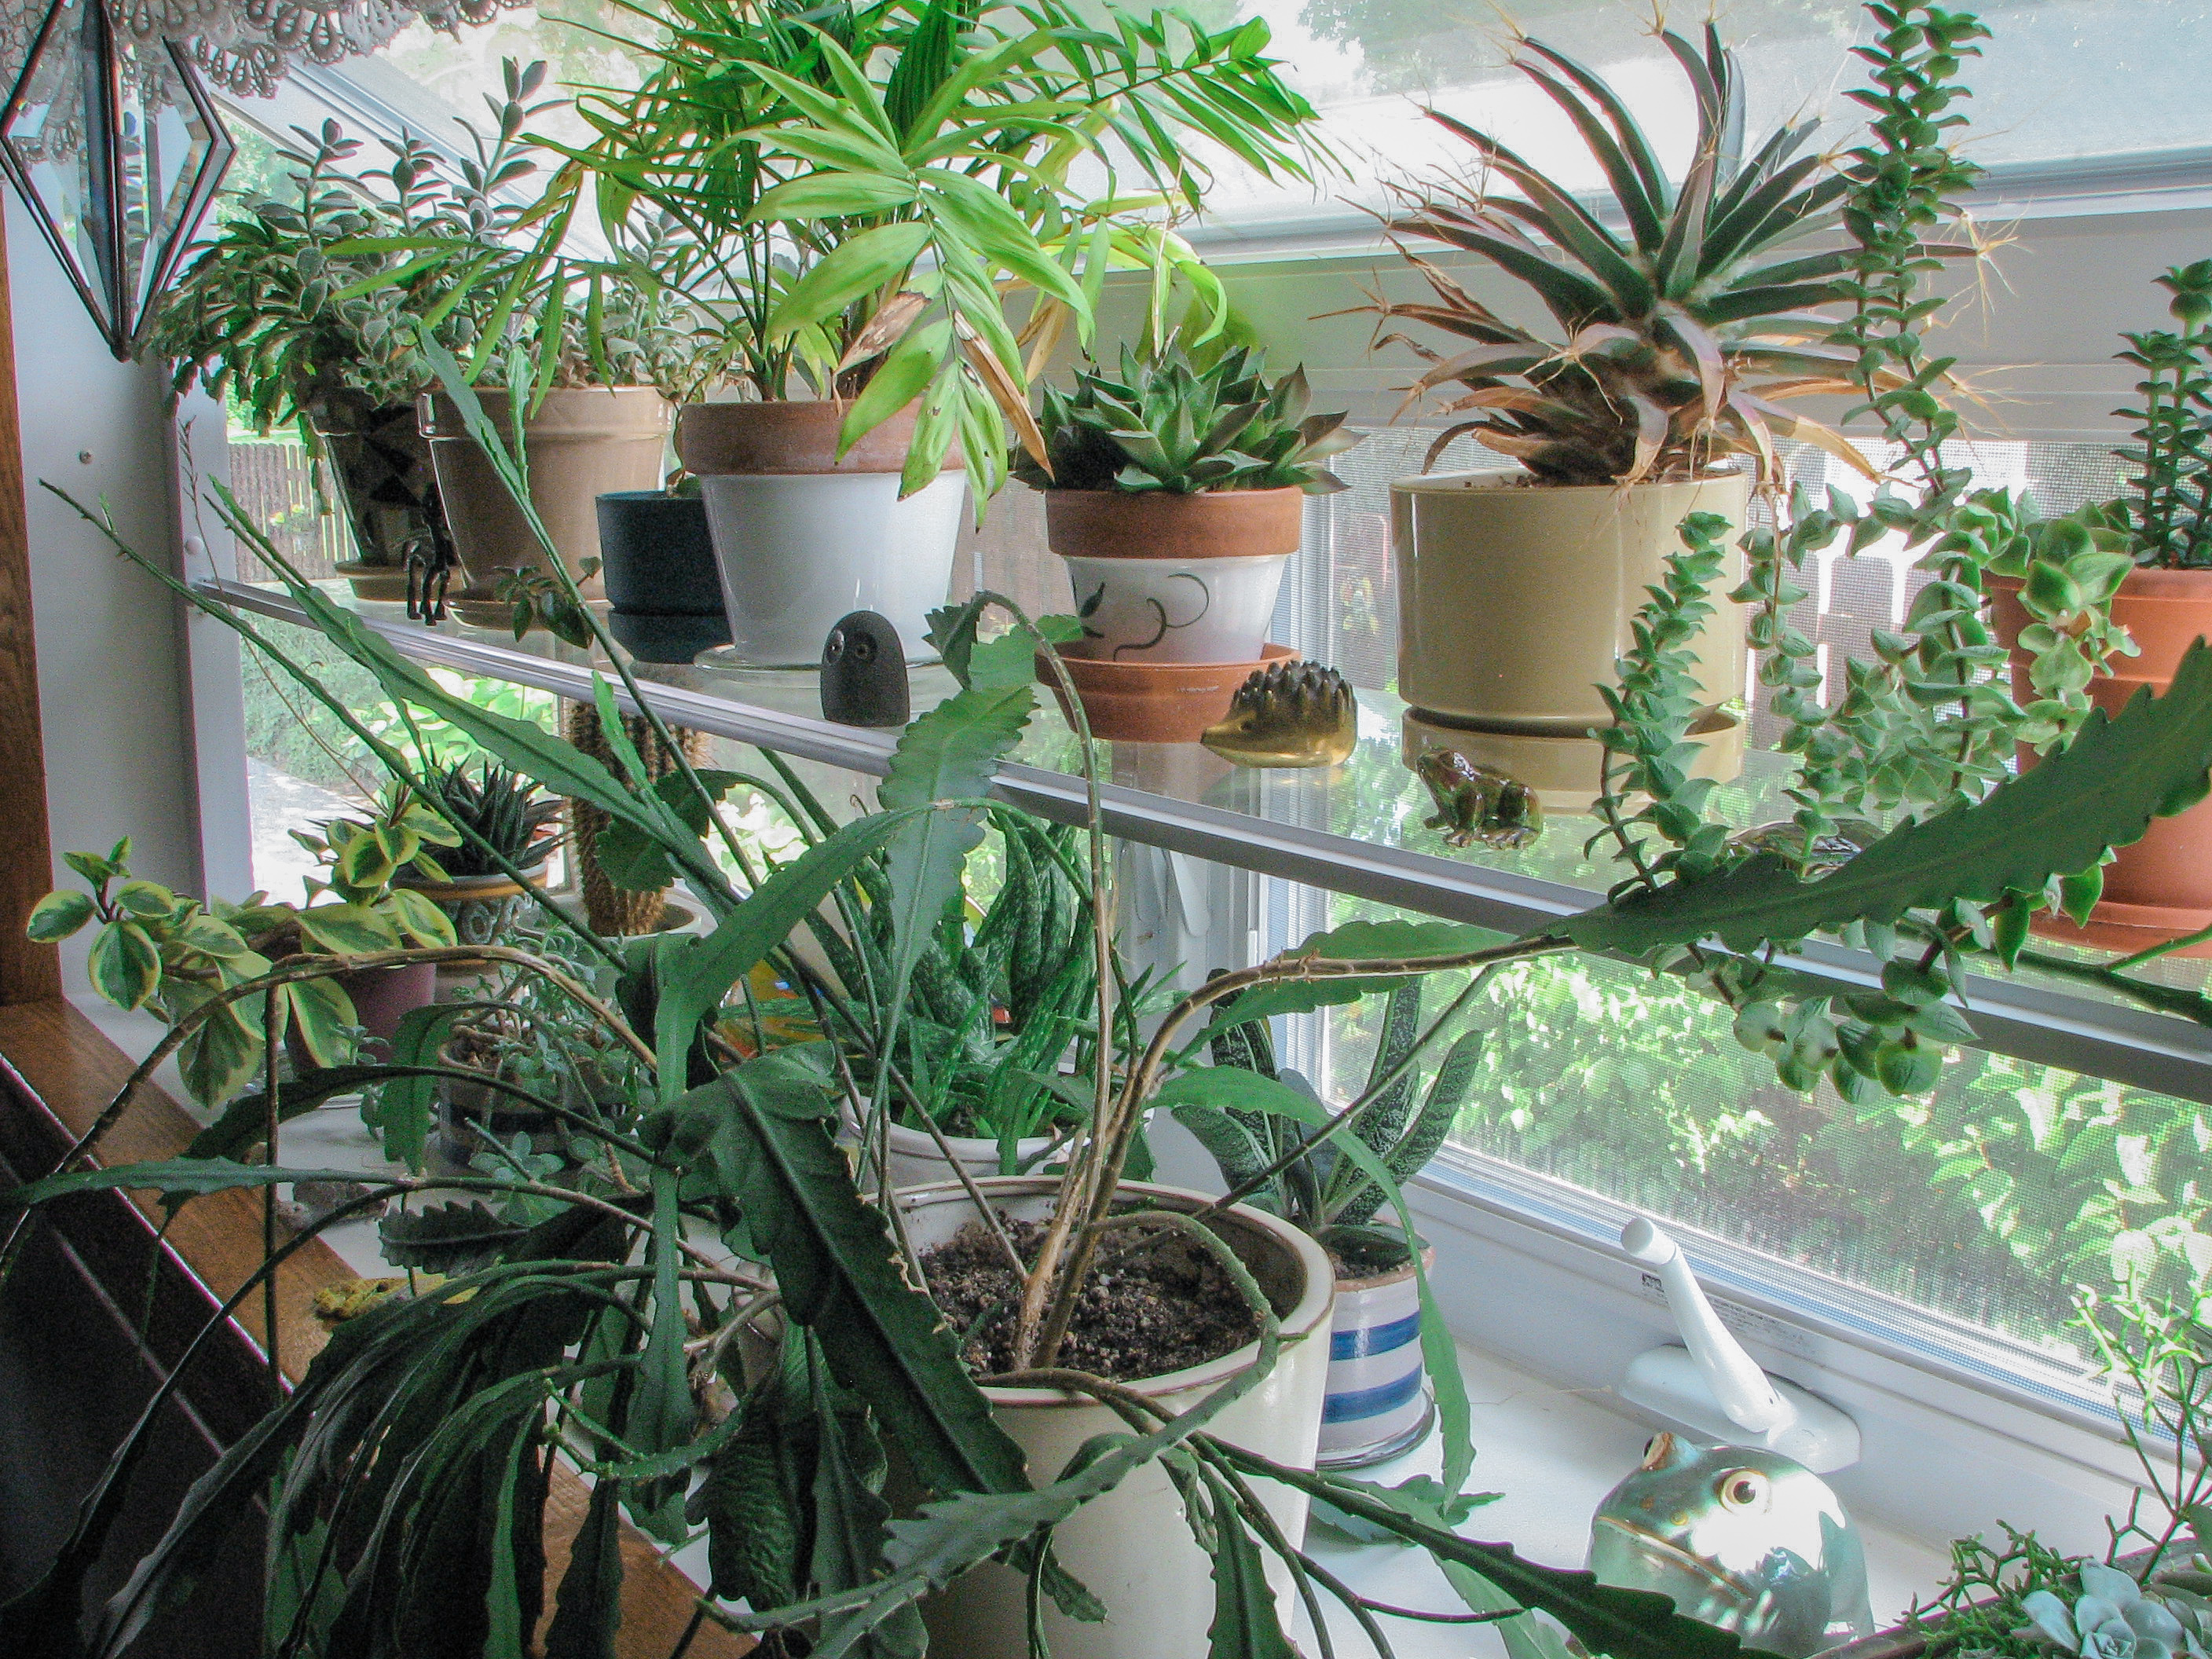 Houseplants in kitchen window